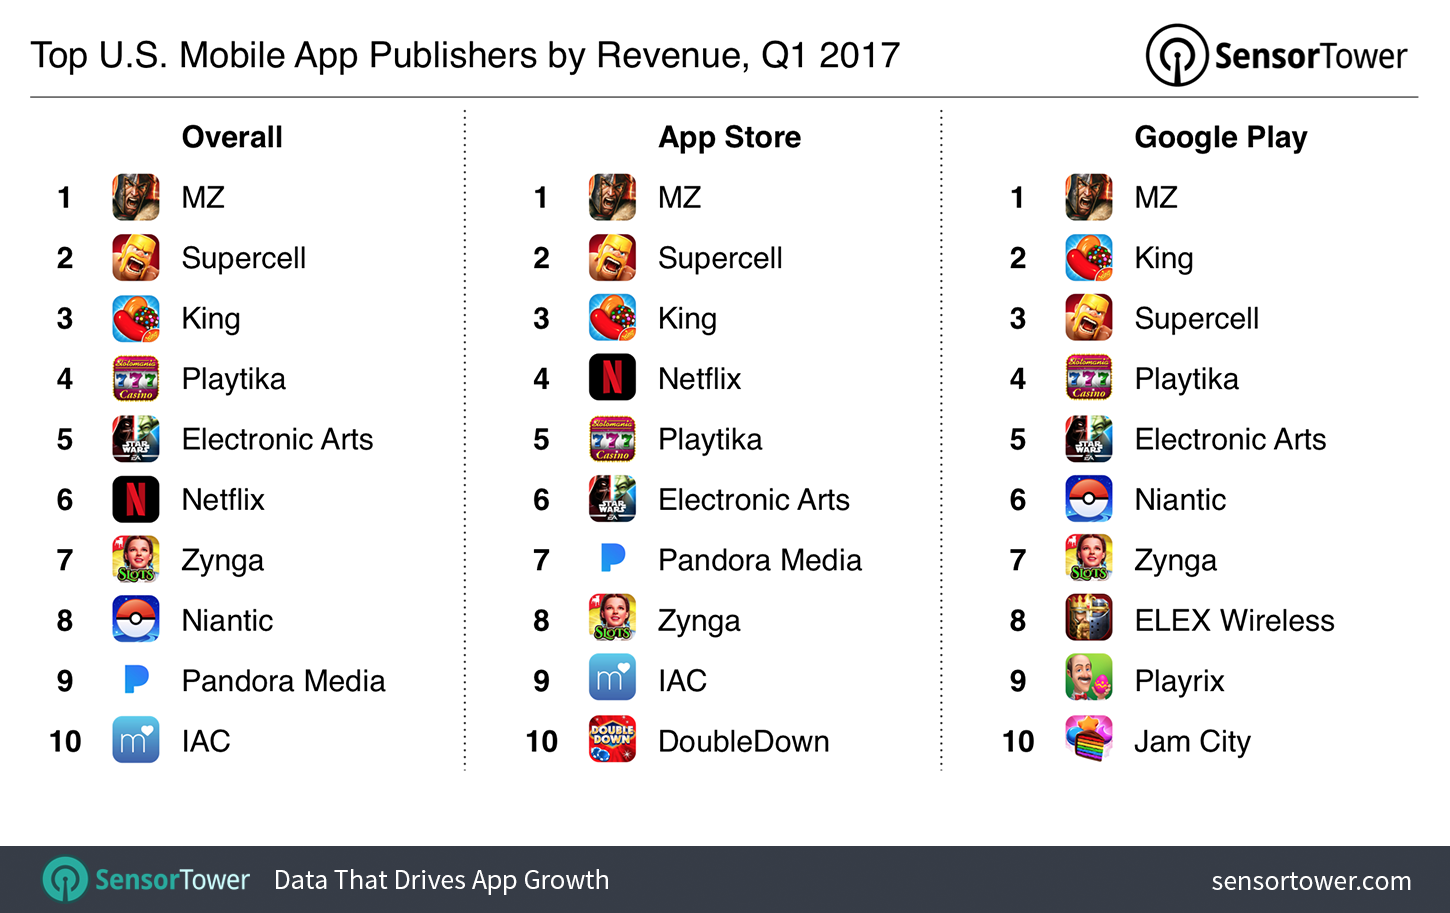 Q1 2017's Top Mobile App Publishers by U.S. Revenue